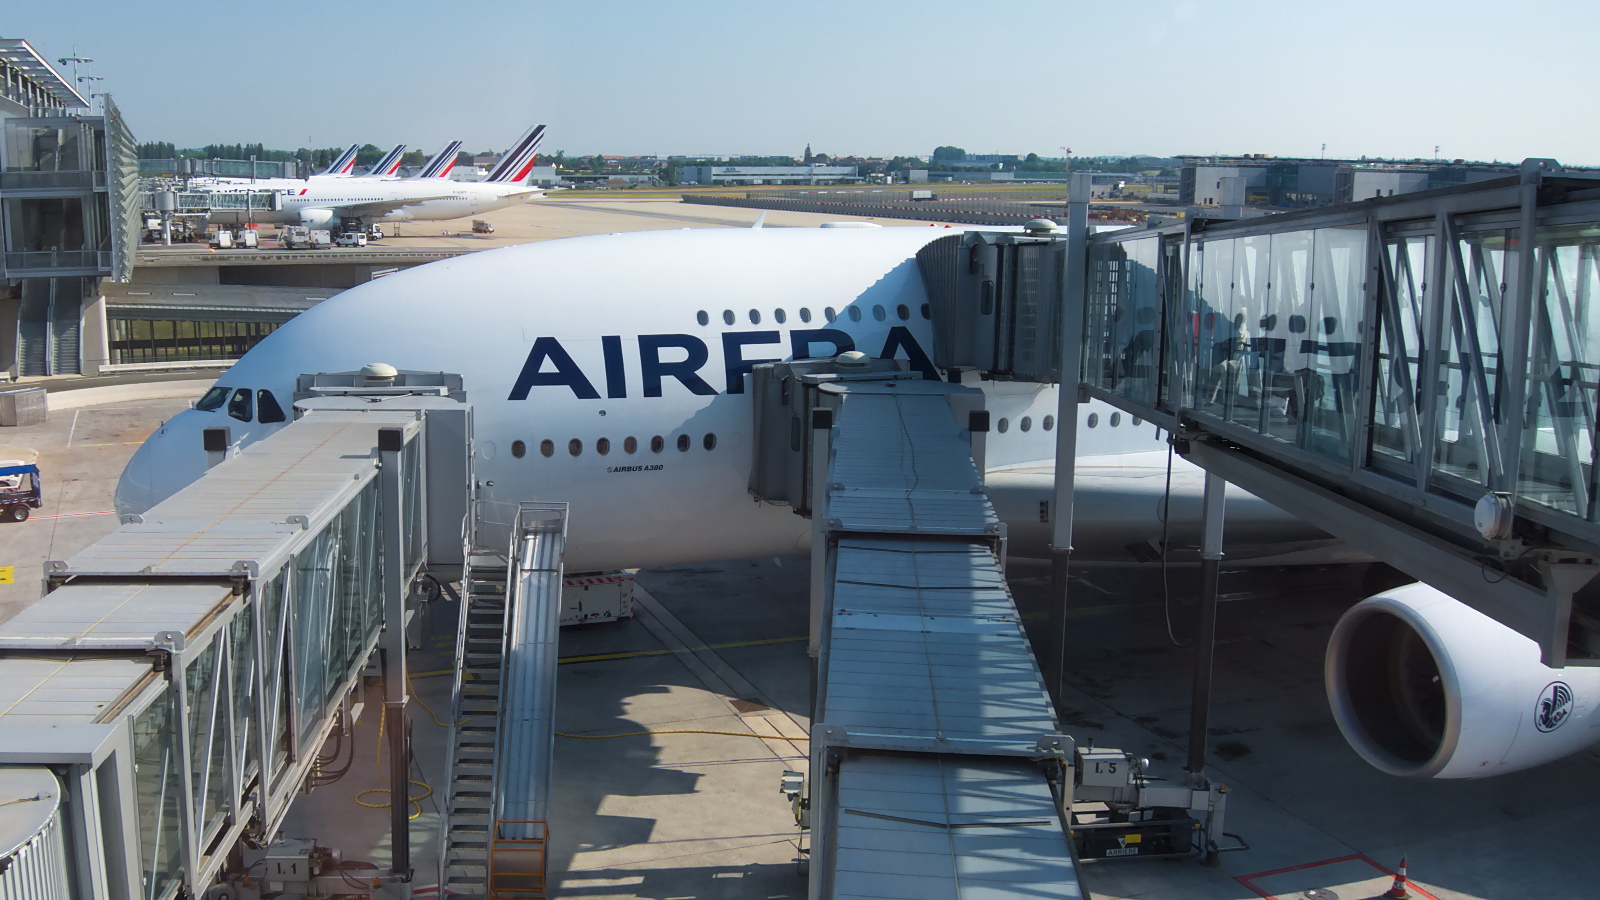 F-HPJB ✈ Air France Airbus A380-861 @ Paris-Charles de Gaulle Airport